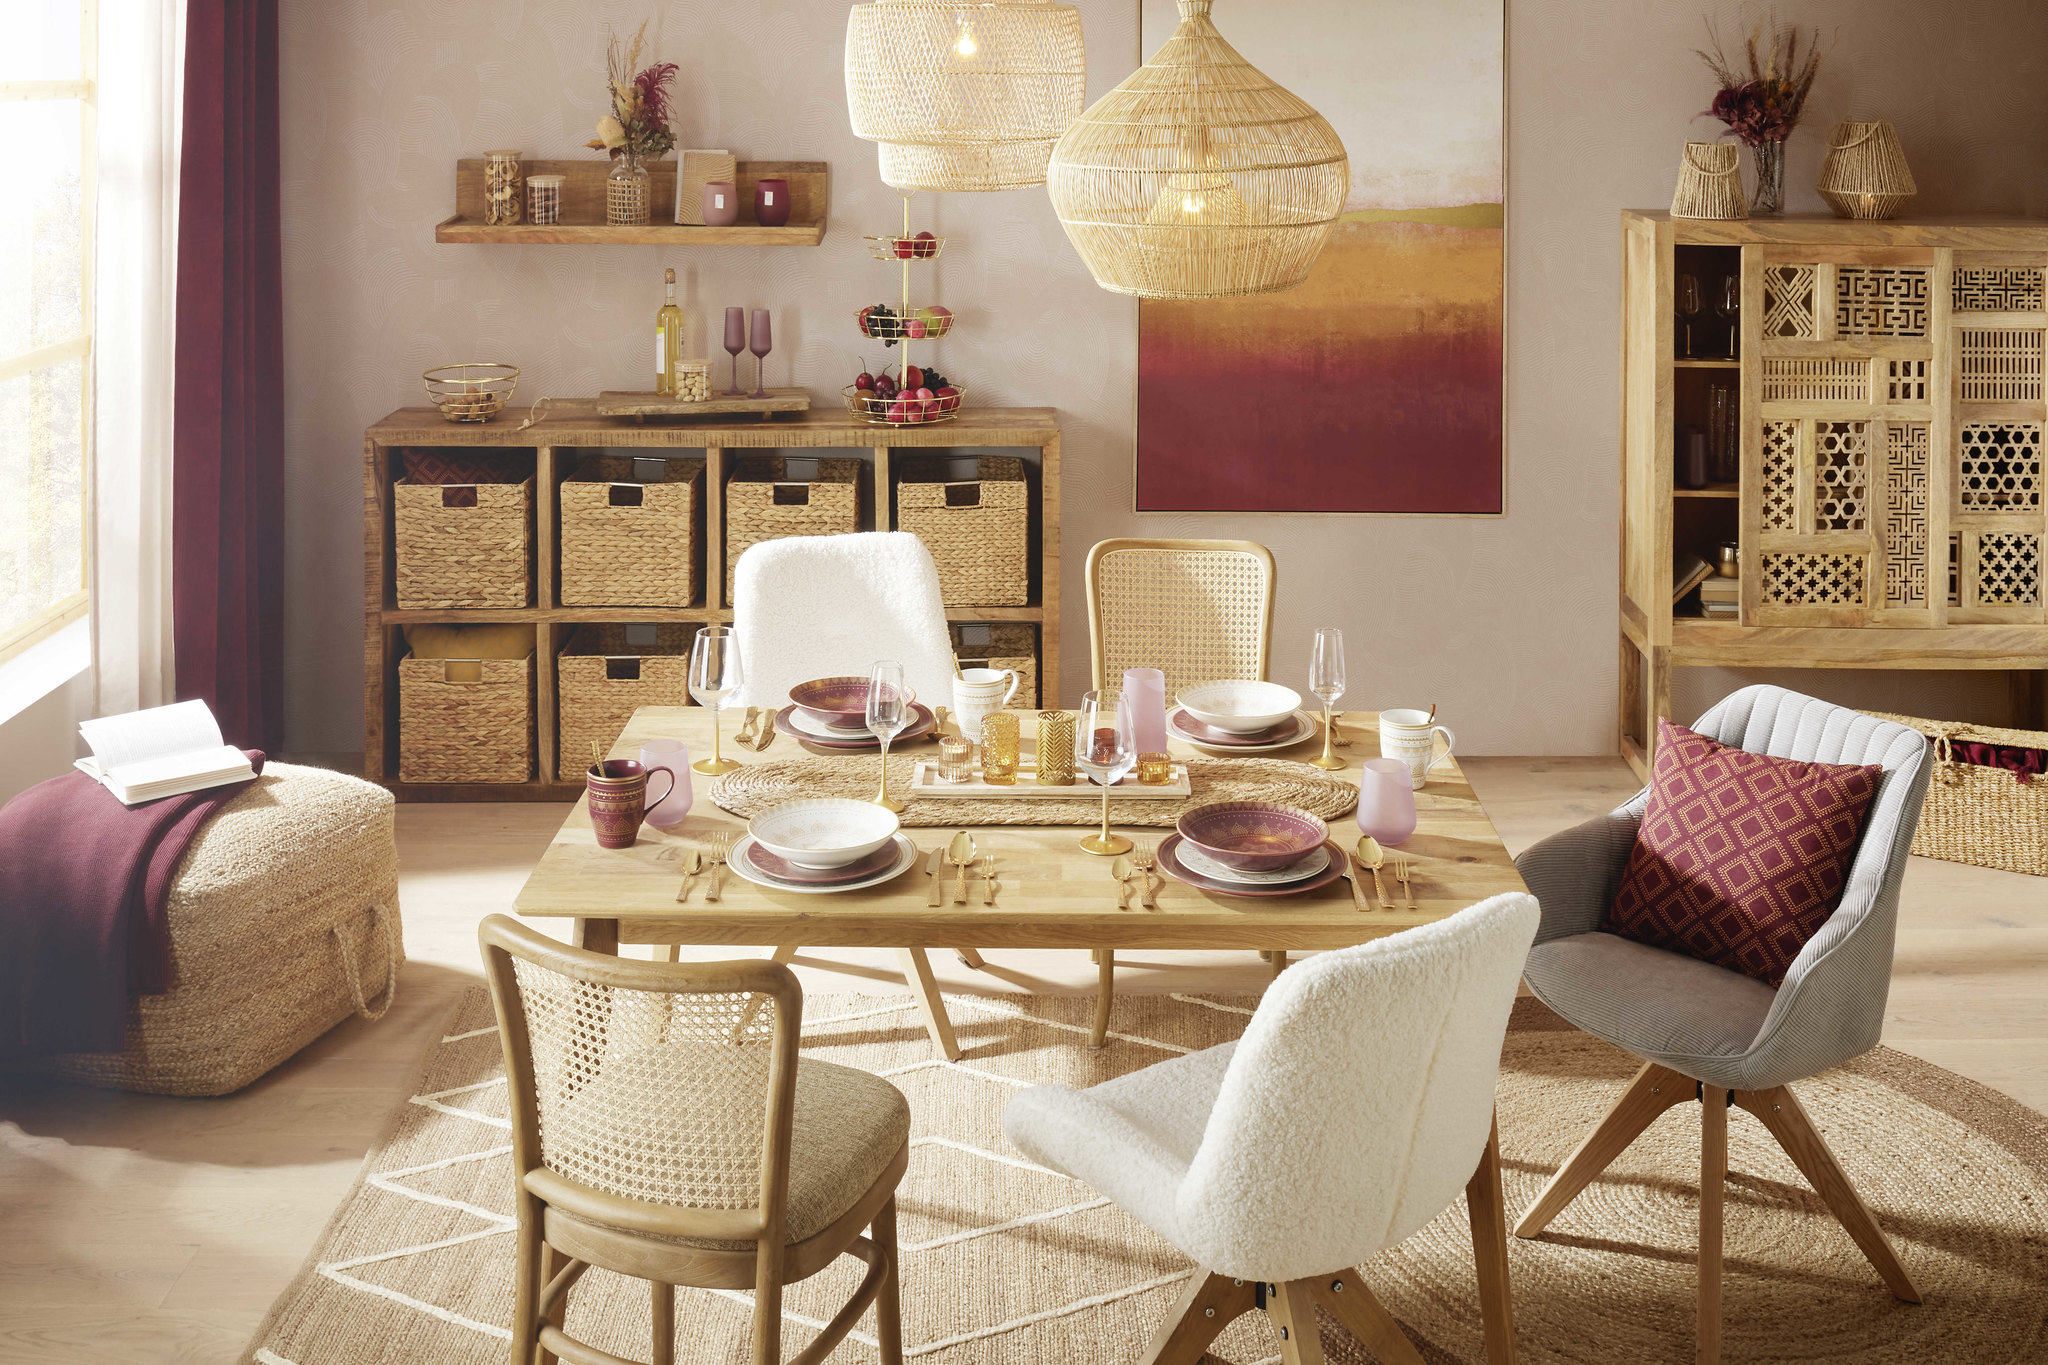 Inšpirácia na bývanie, jedálenský stôl so stoličkami, Mobelix.